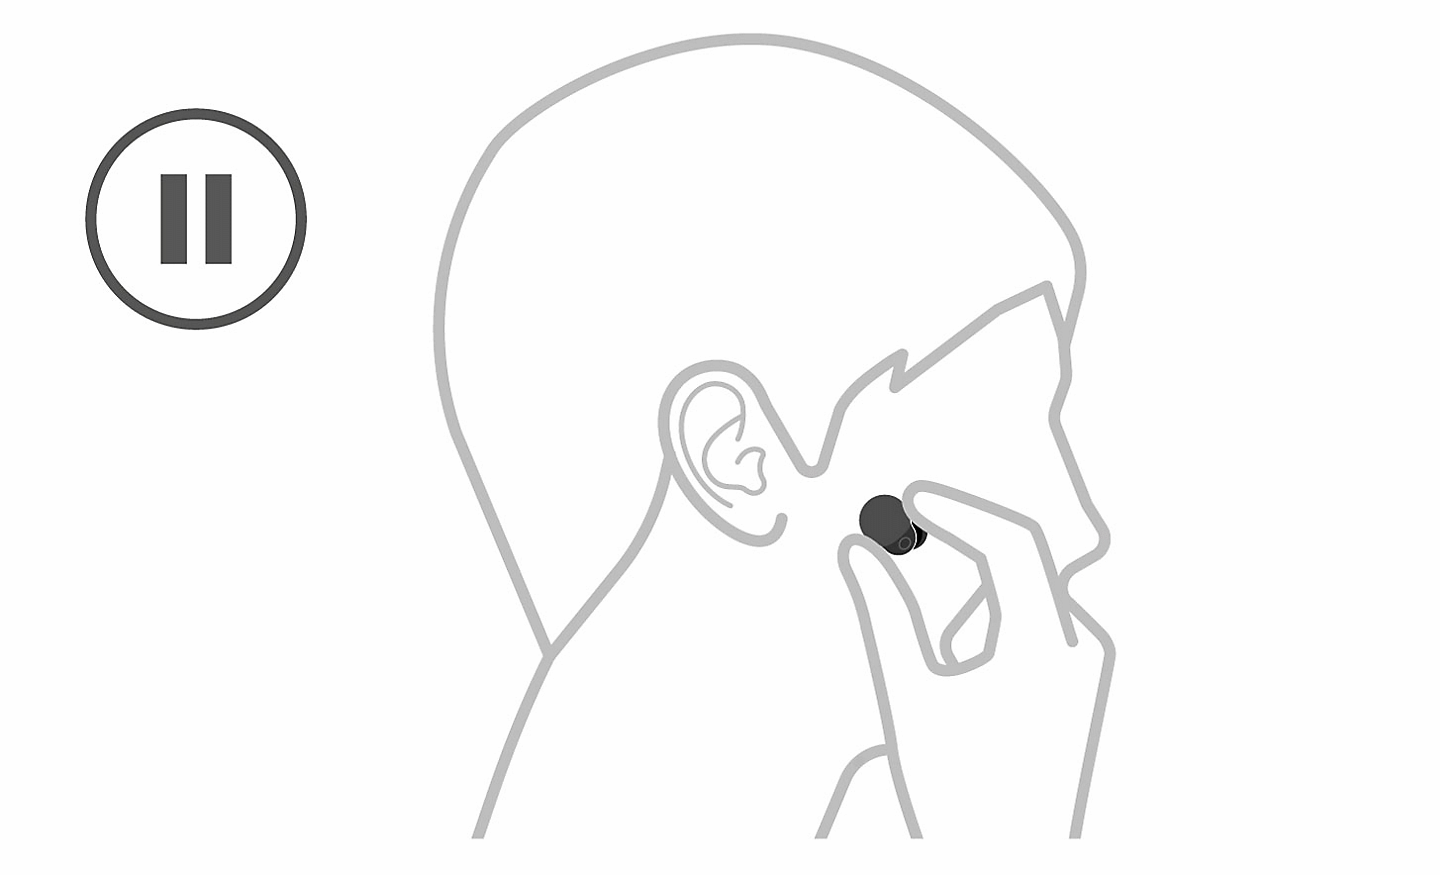 Hình minh họa một đầu người, bên trái có biểu tượng tạm dừng và một bàn tay đang lấy tai nghe ra khỏi tai